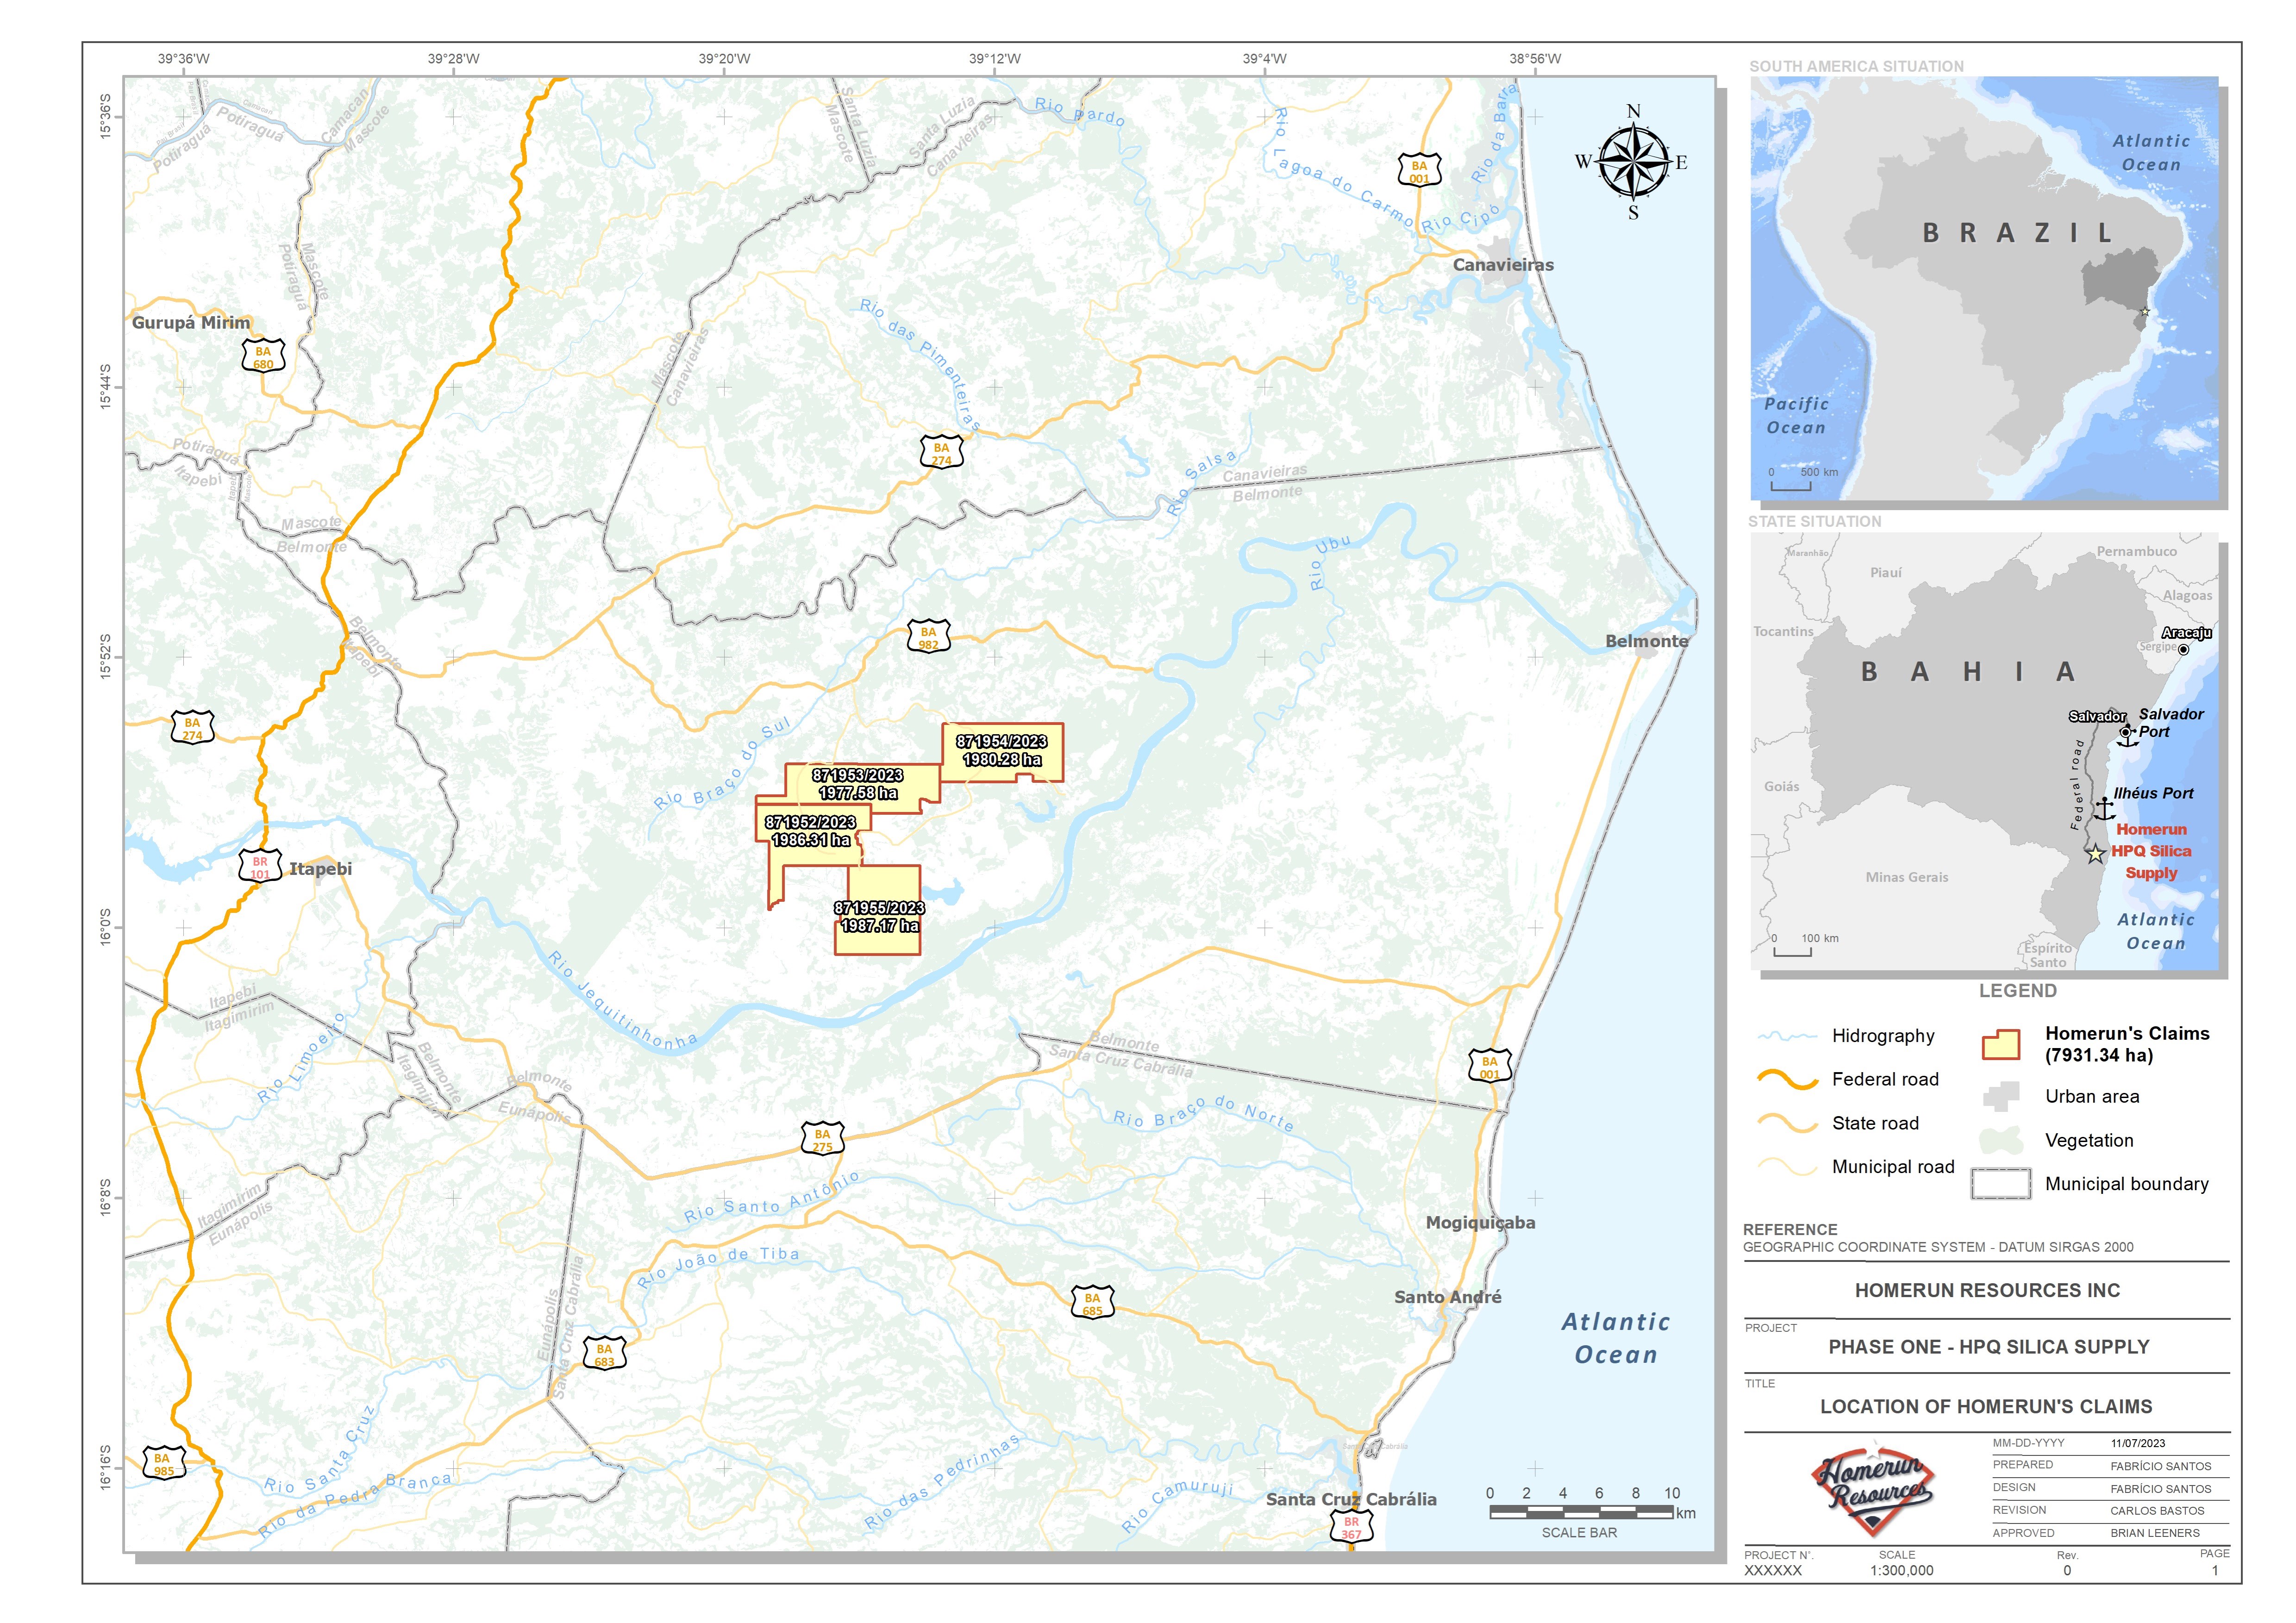 Das Bild zeigt eine detaillierte Landkarte mit den neuen Konzessionsgebieten von Homerun Resources in Brasilien, markiert in Rot. Zusätzliche Informationen wie Straßen, Gewässer und Städte sind ebenfalls abgebildet, neben einer Legende und einem Einblick in die geografische Lage im Staat Bahia und Brasilien.